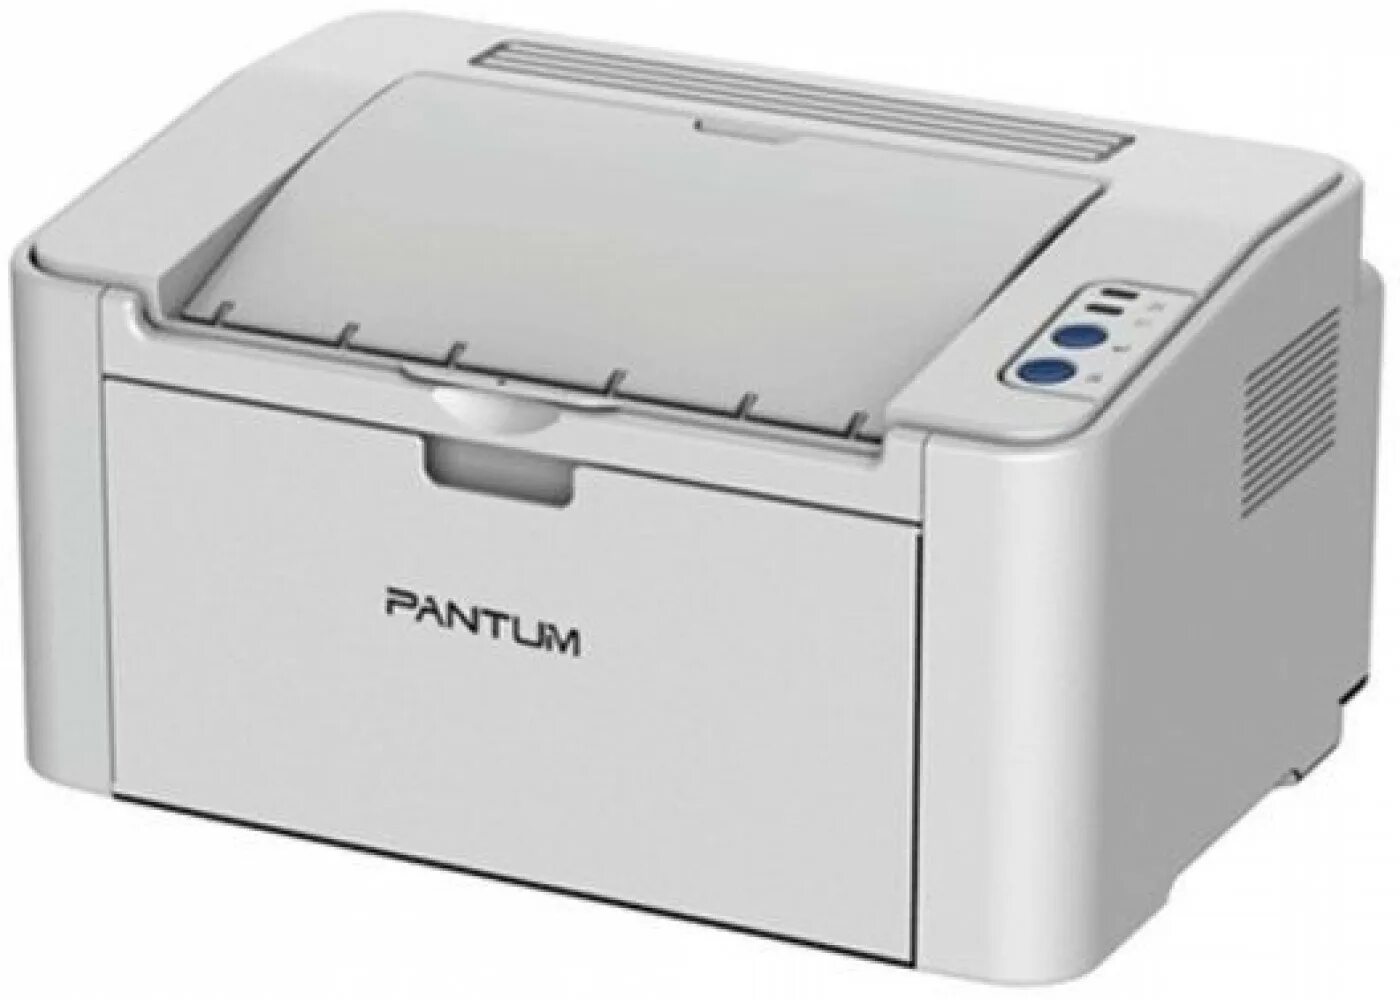 Принтер лазерный Pantum p2200. Принтер лазерный Pantum p2200 a4. Принтер лазерный Pantum p2200 серый. Pantum принтер p2200 принтер. Принтер дешевая печать